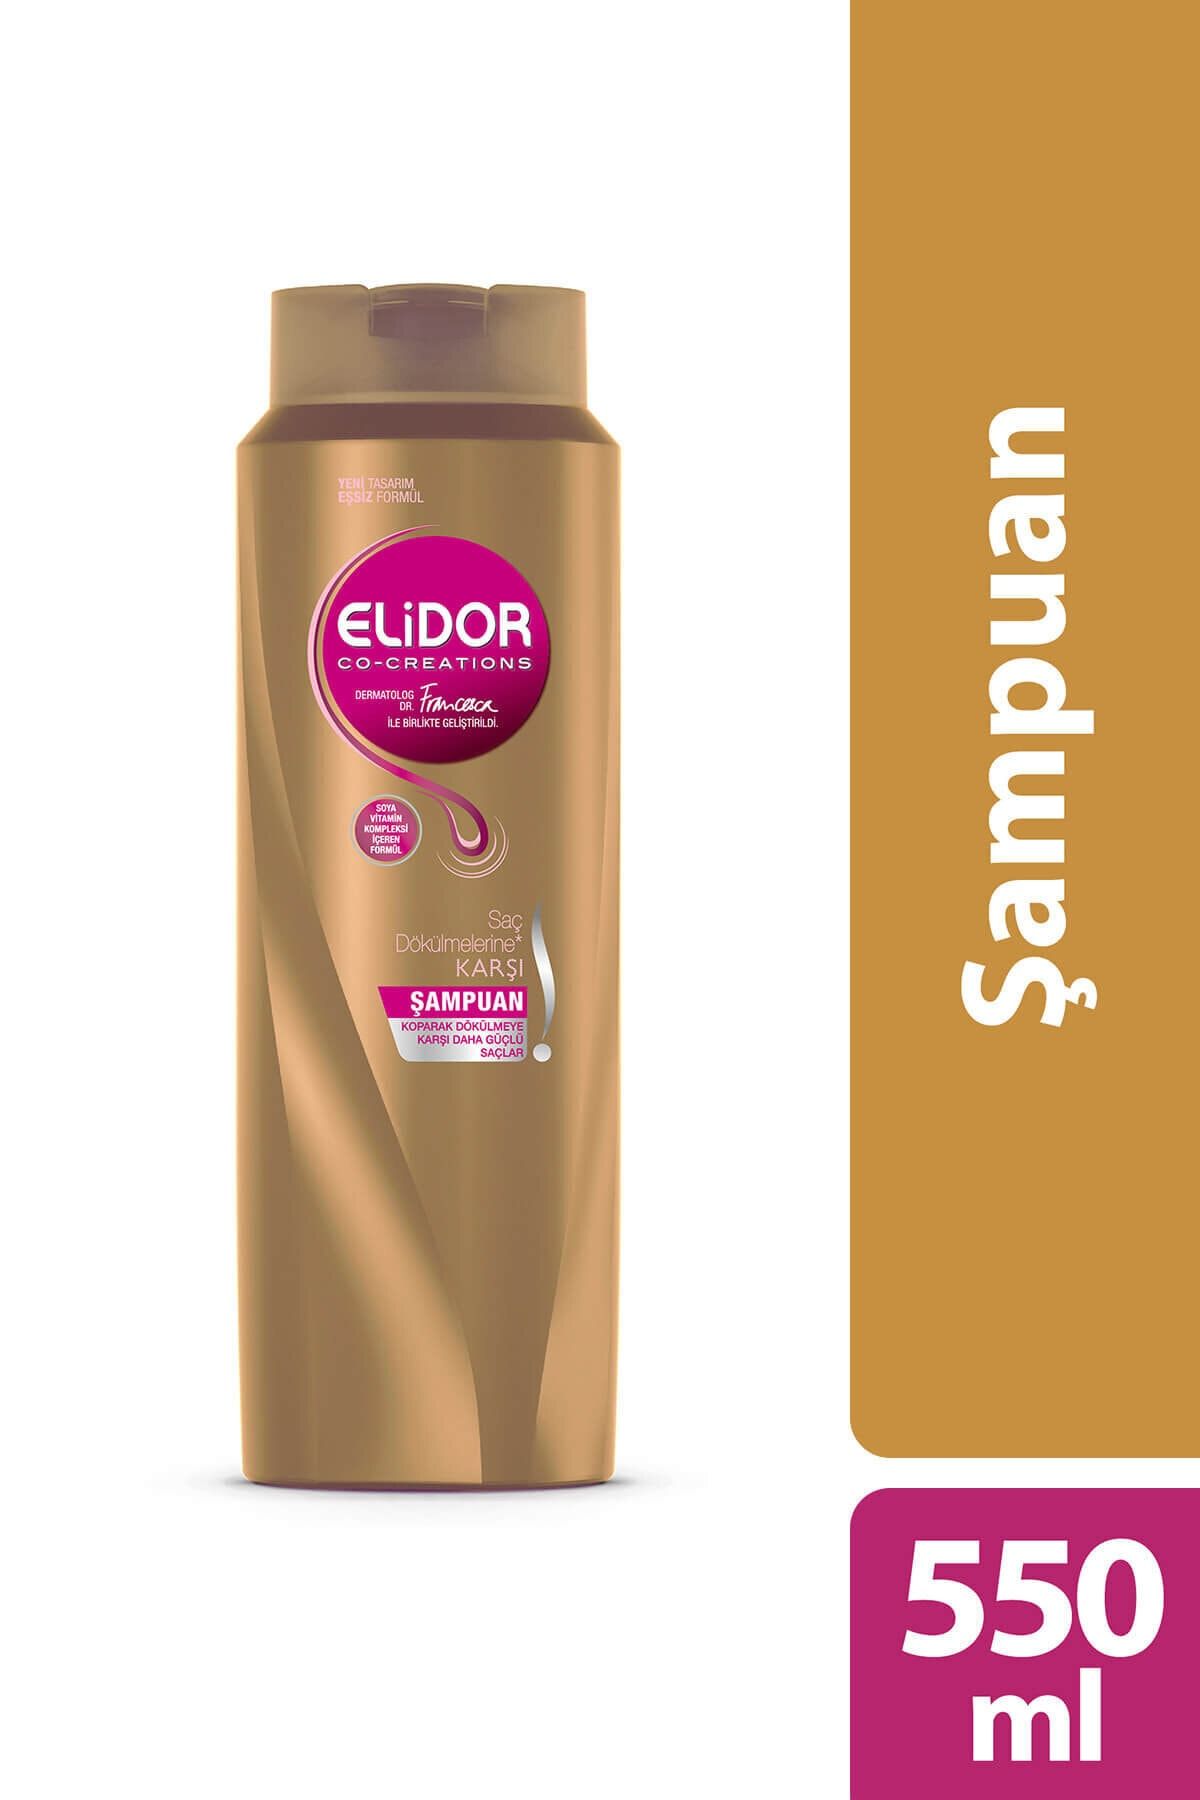 Elidor Şampuan Dökülme Karşıtı 500 ml